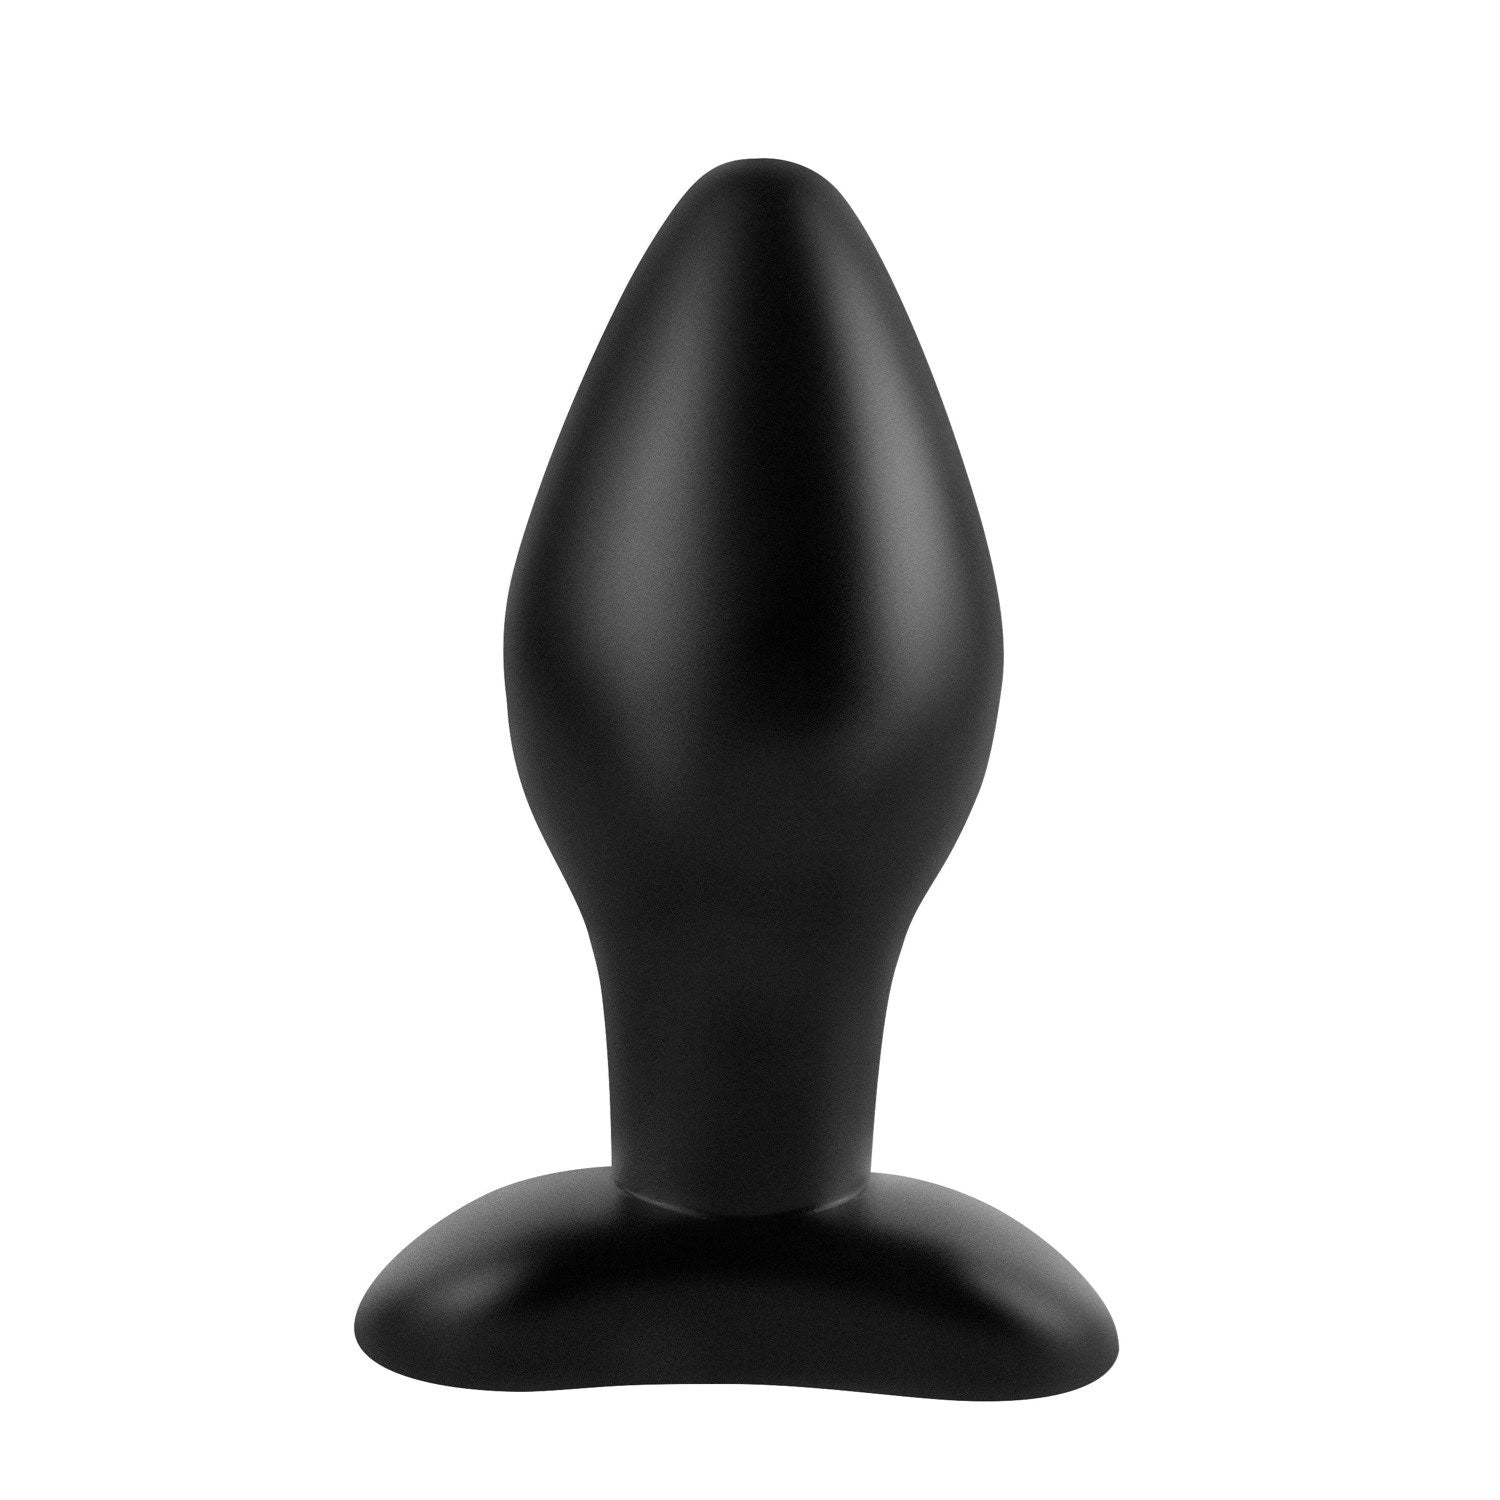 肛门幻想系列 大号硅胶塞 - 黑色 11 厘米（4.25 英寸）对接塞 by Pipedream